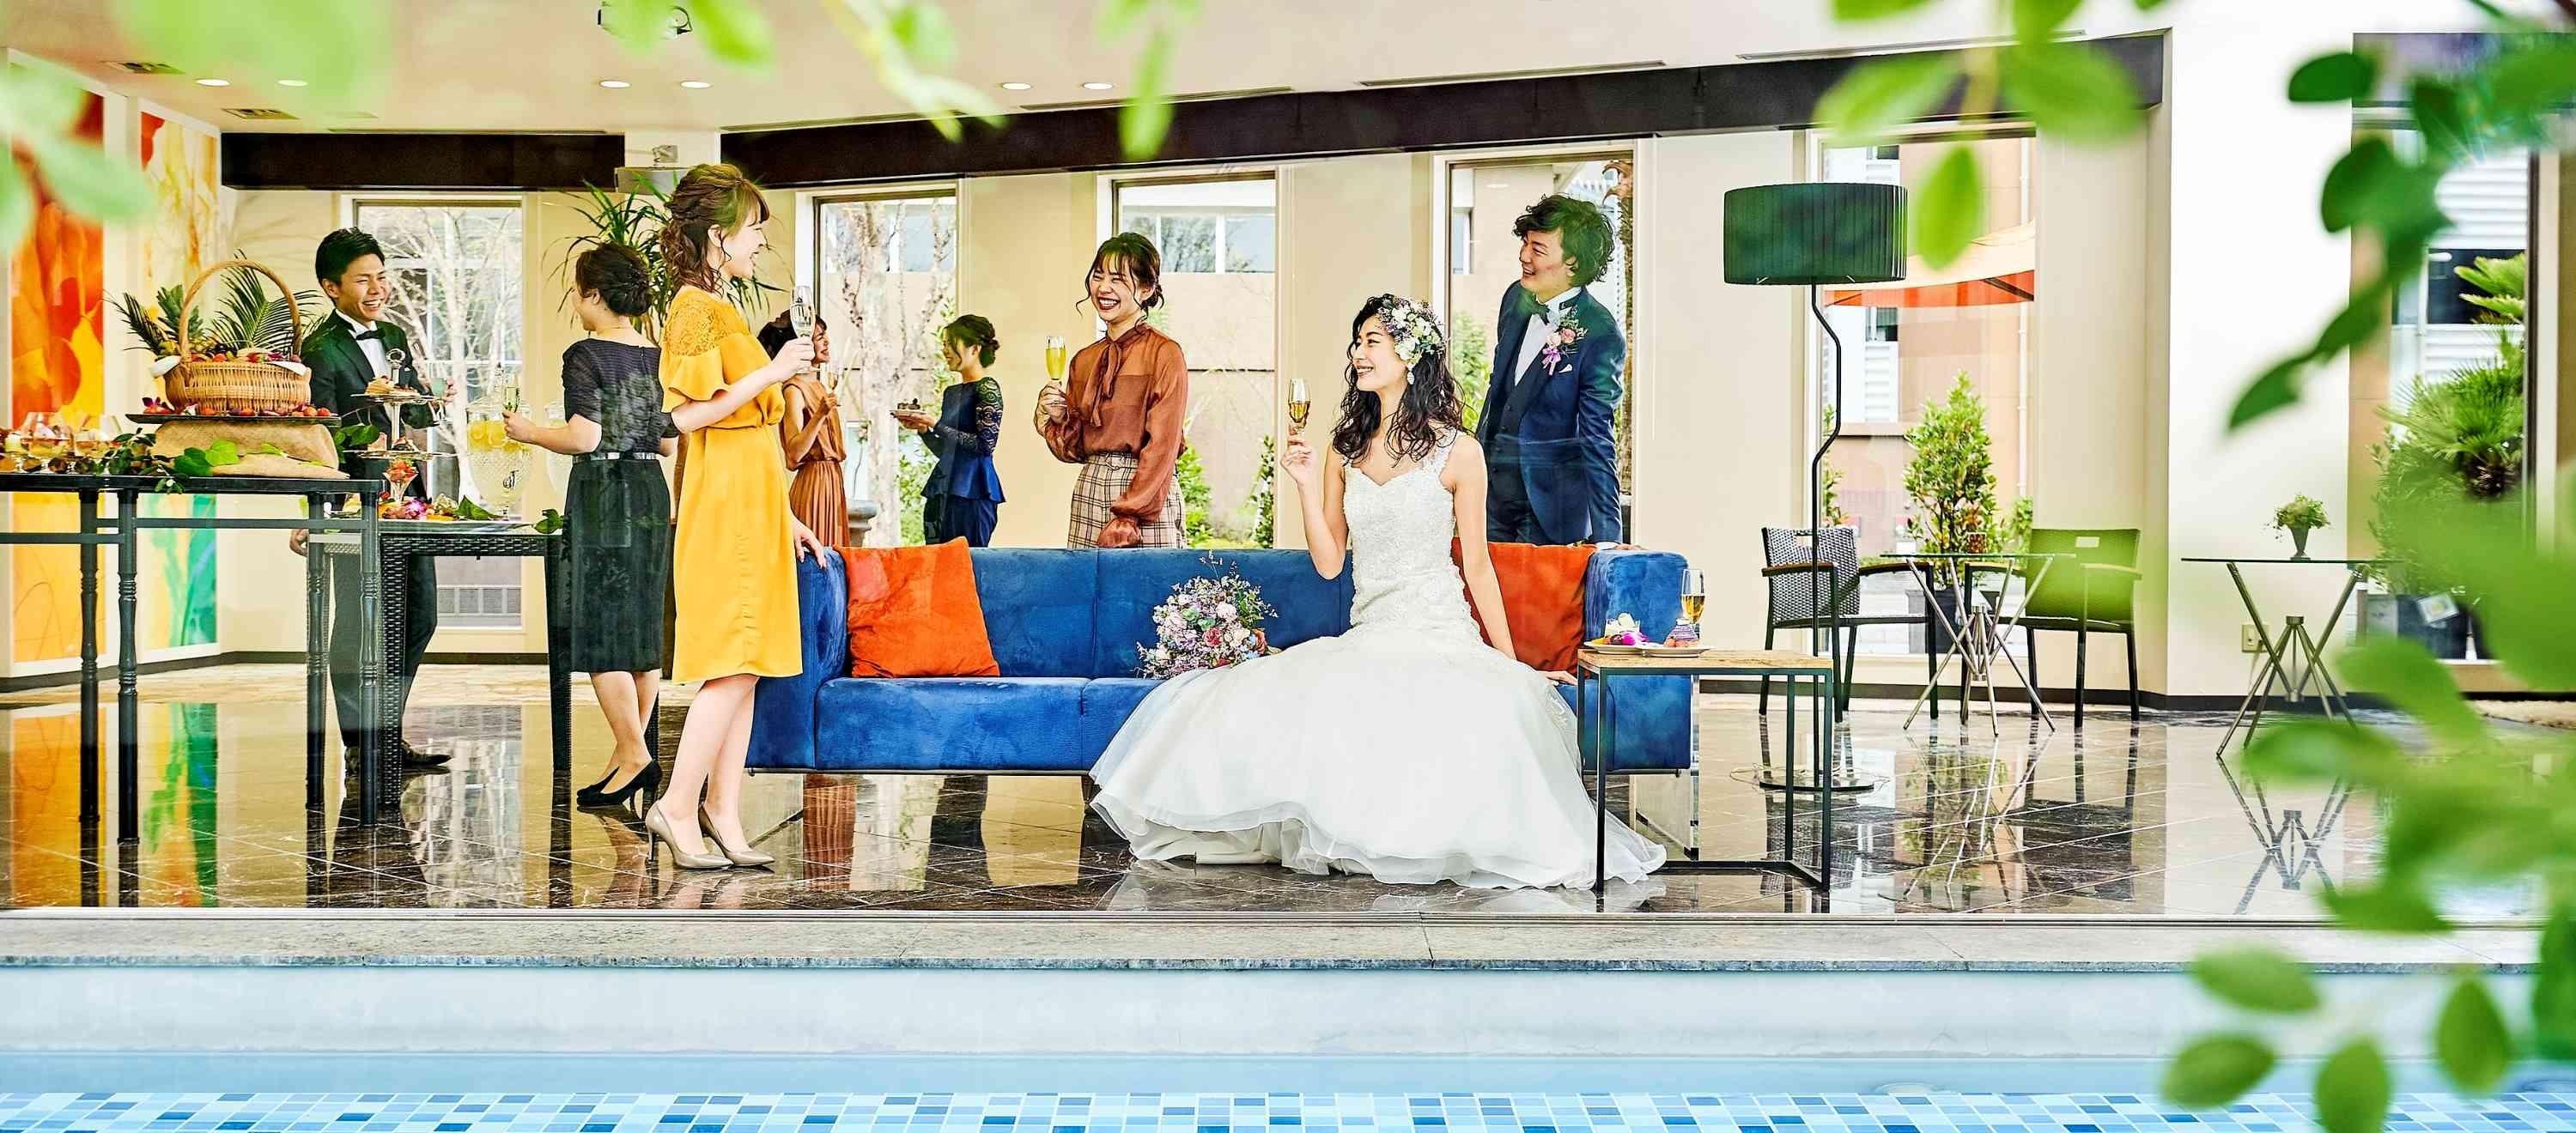 福岡で結婚式場を探す人必見 人気式場ランキング 結婚式の風習紹介